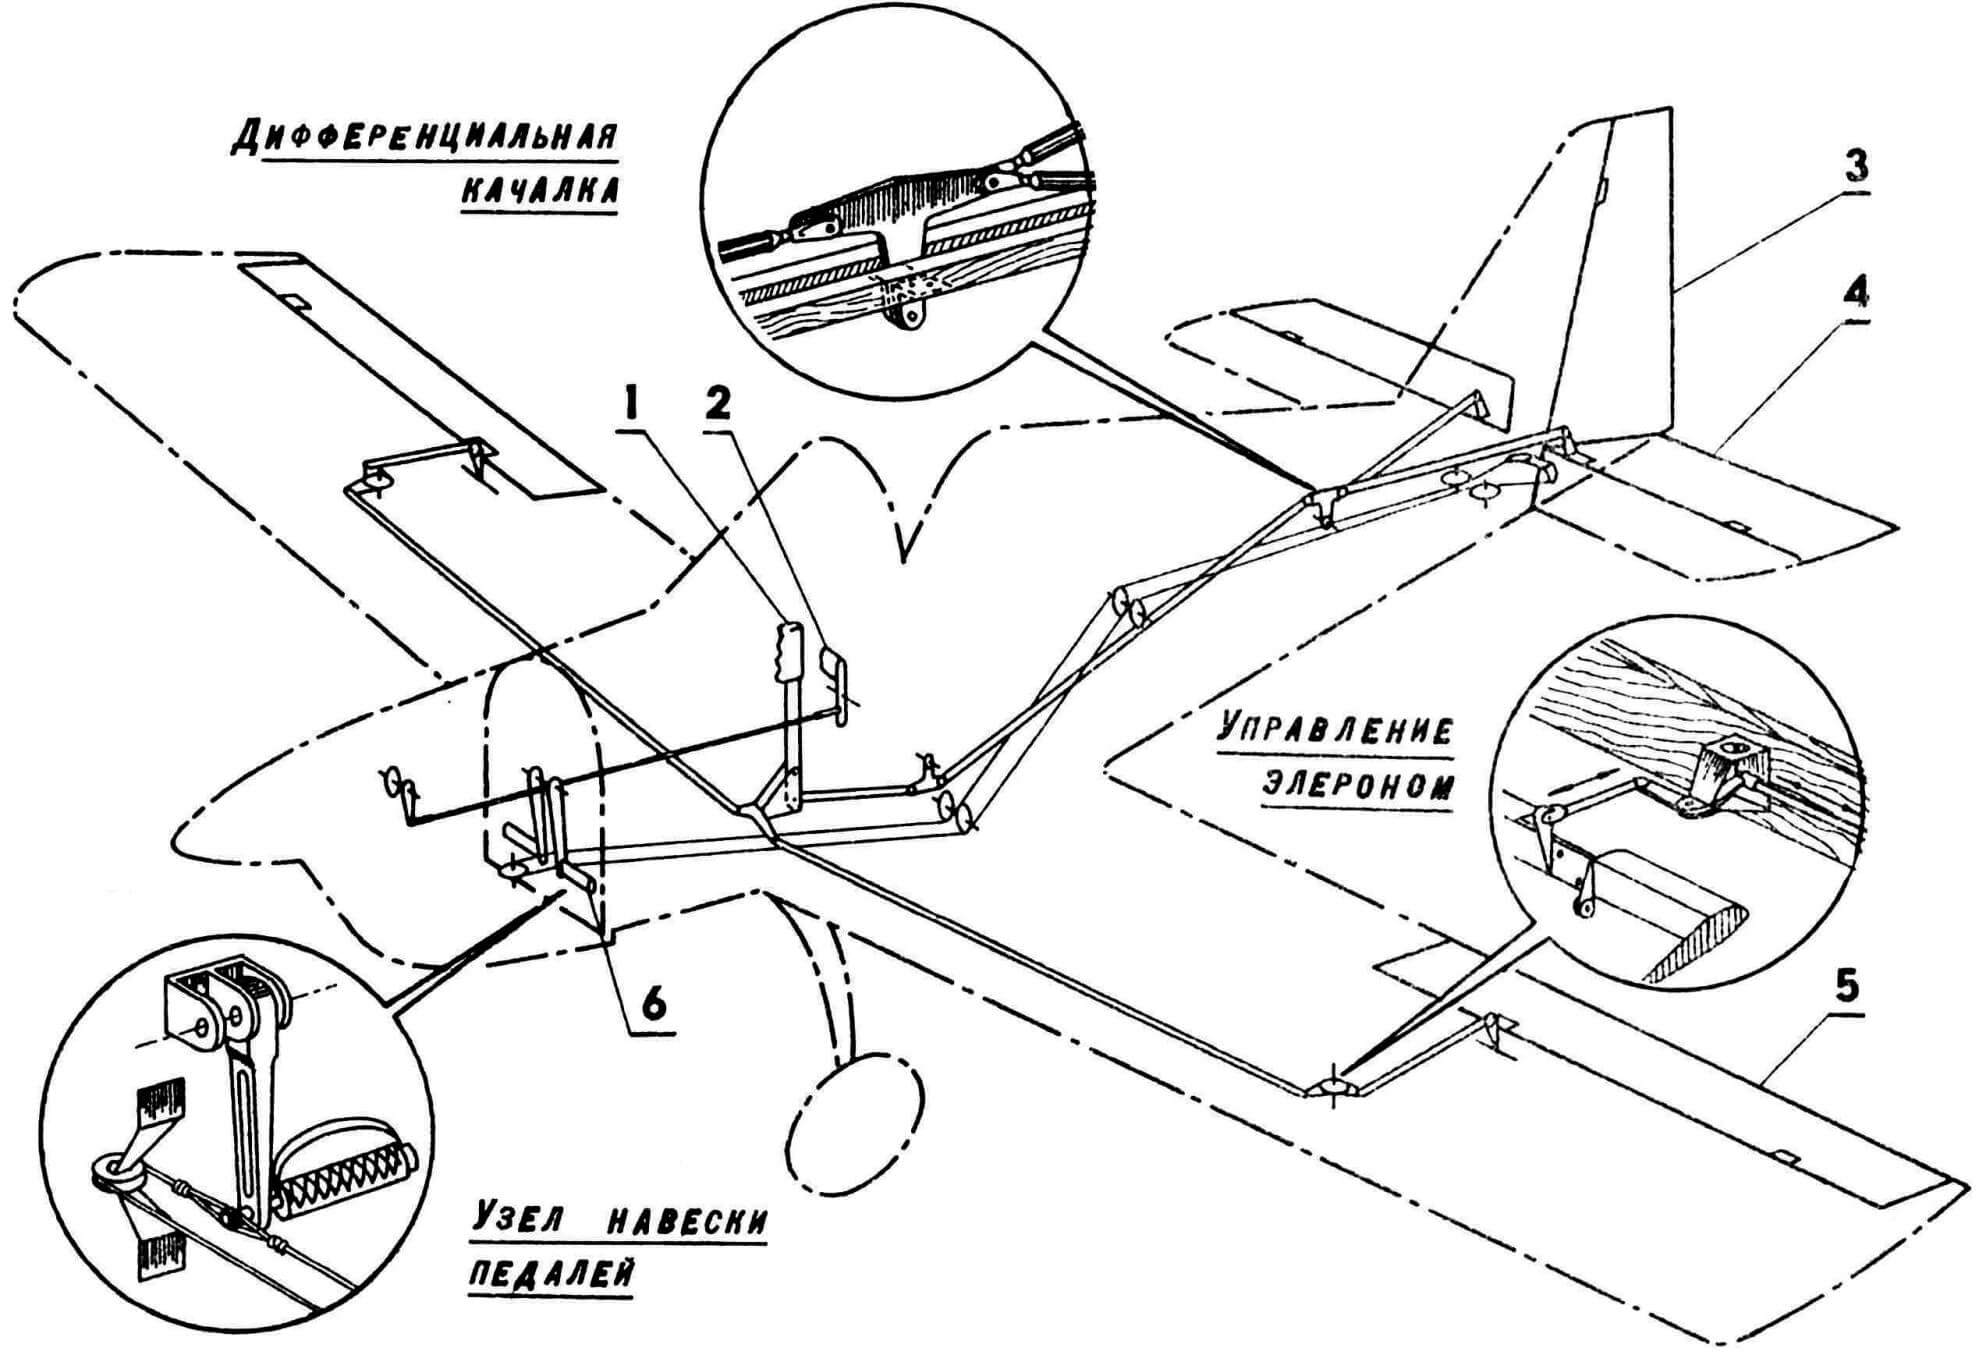 Схема управления самолетом «Арго-02»